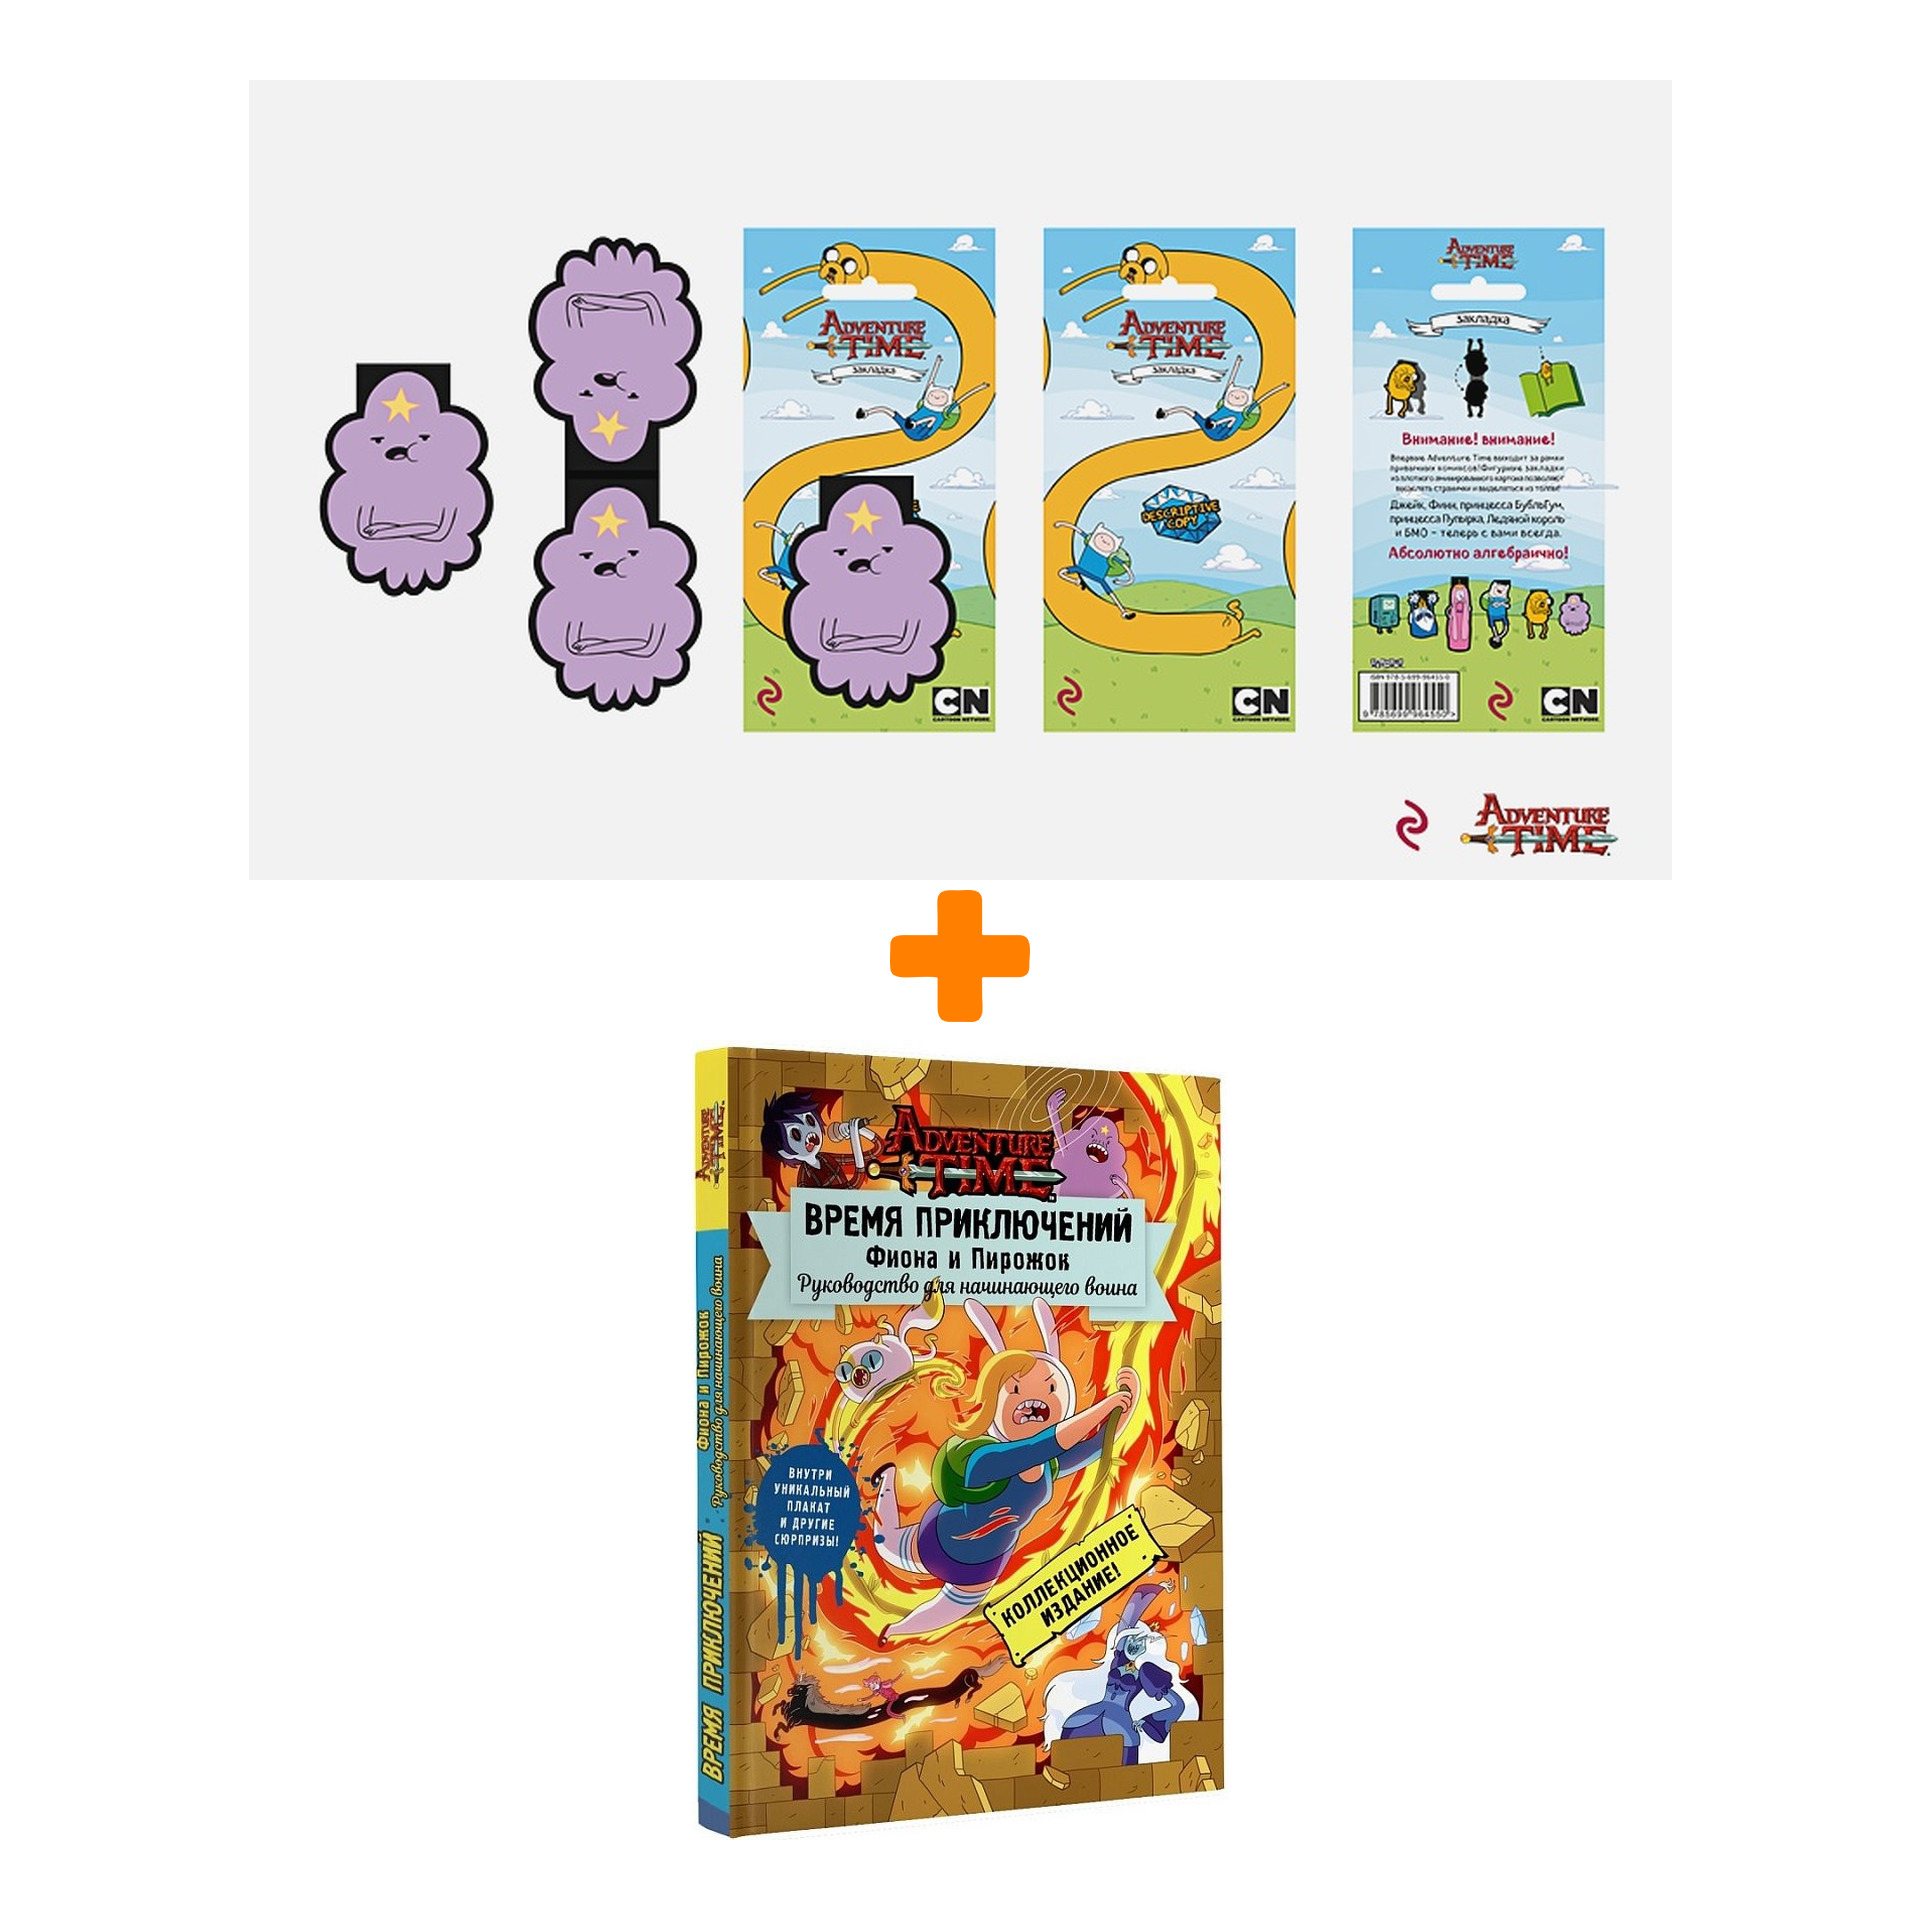 цена Набор Adventure Time закладка + книга Фиона и Пирожок Руководство для начинающего воина